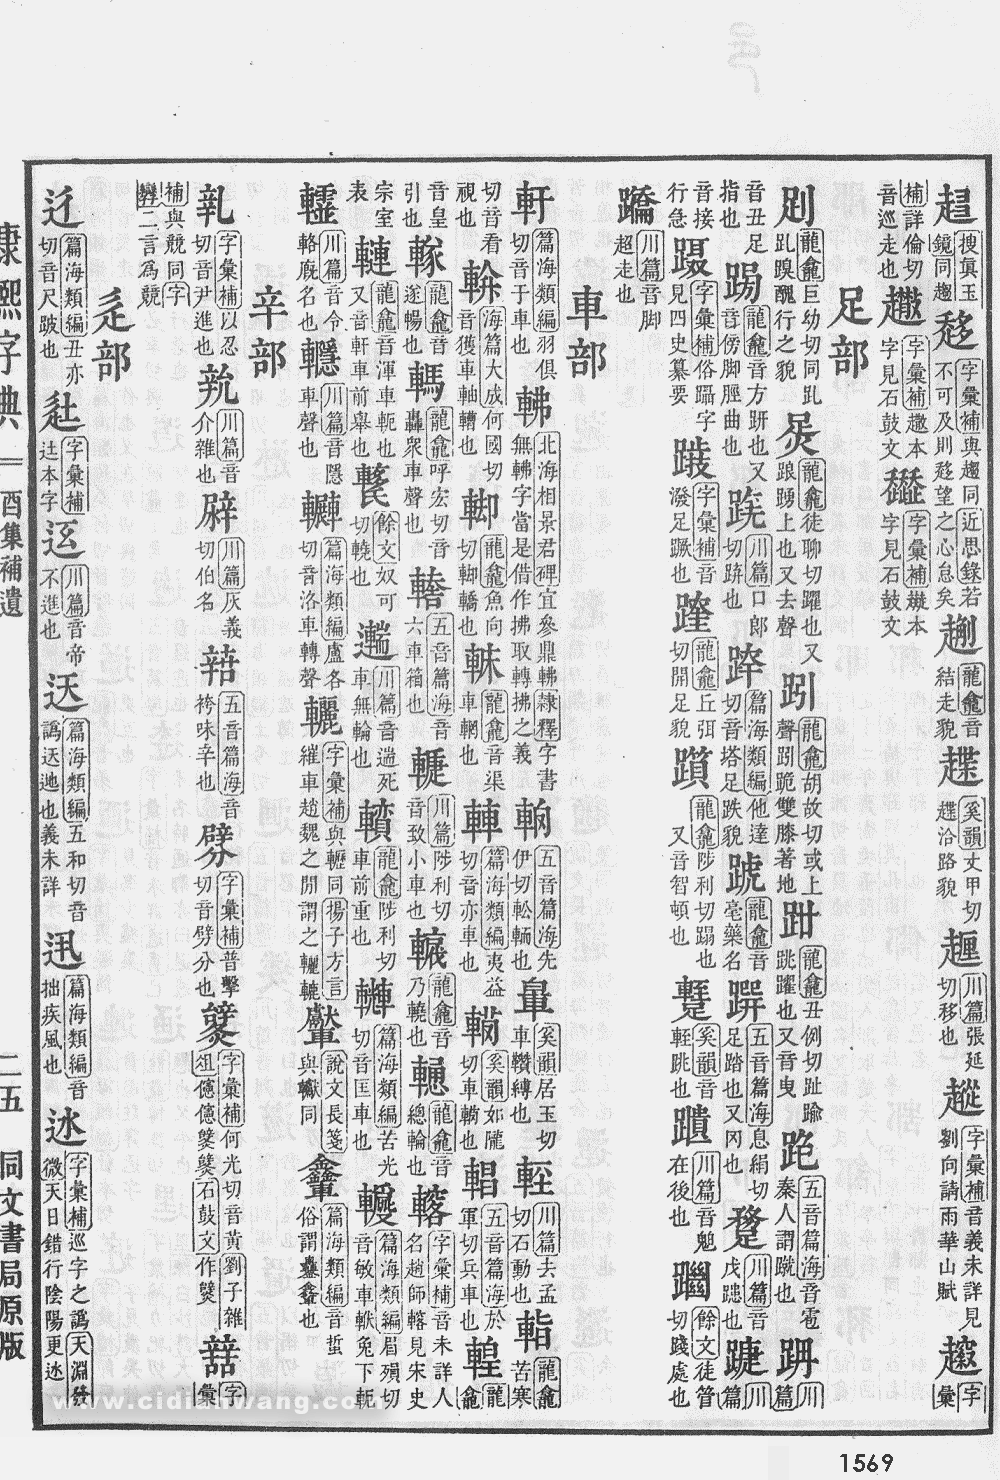 康熙字典掃描版第1569頁